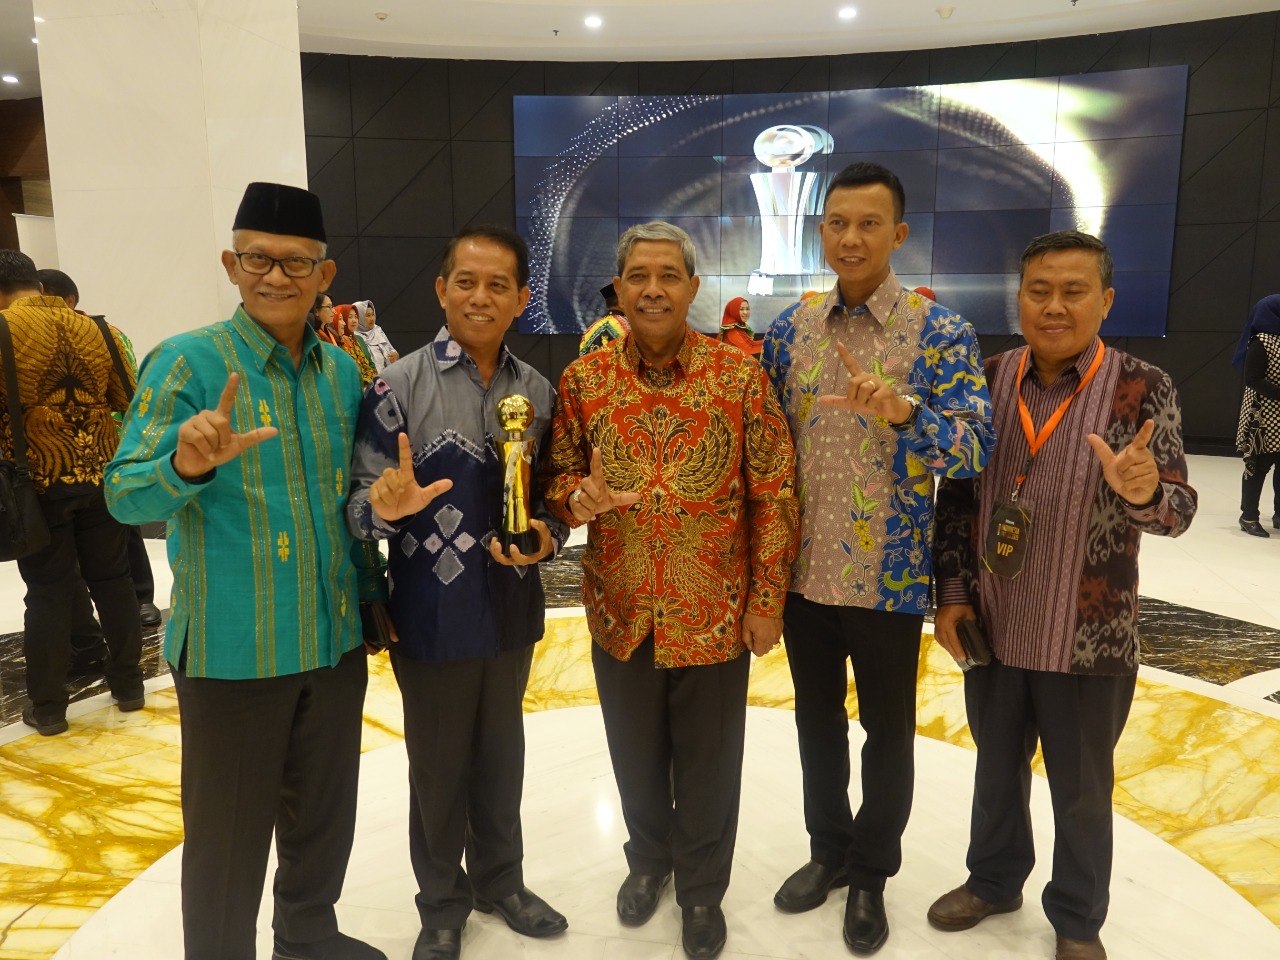 BUPATI LAMPUNG TENGAH TERIMA PENGHARGAAN INDONESIA AWARDS 2019